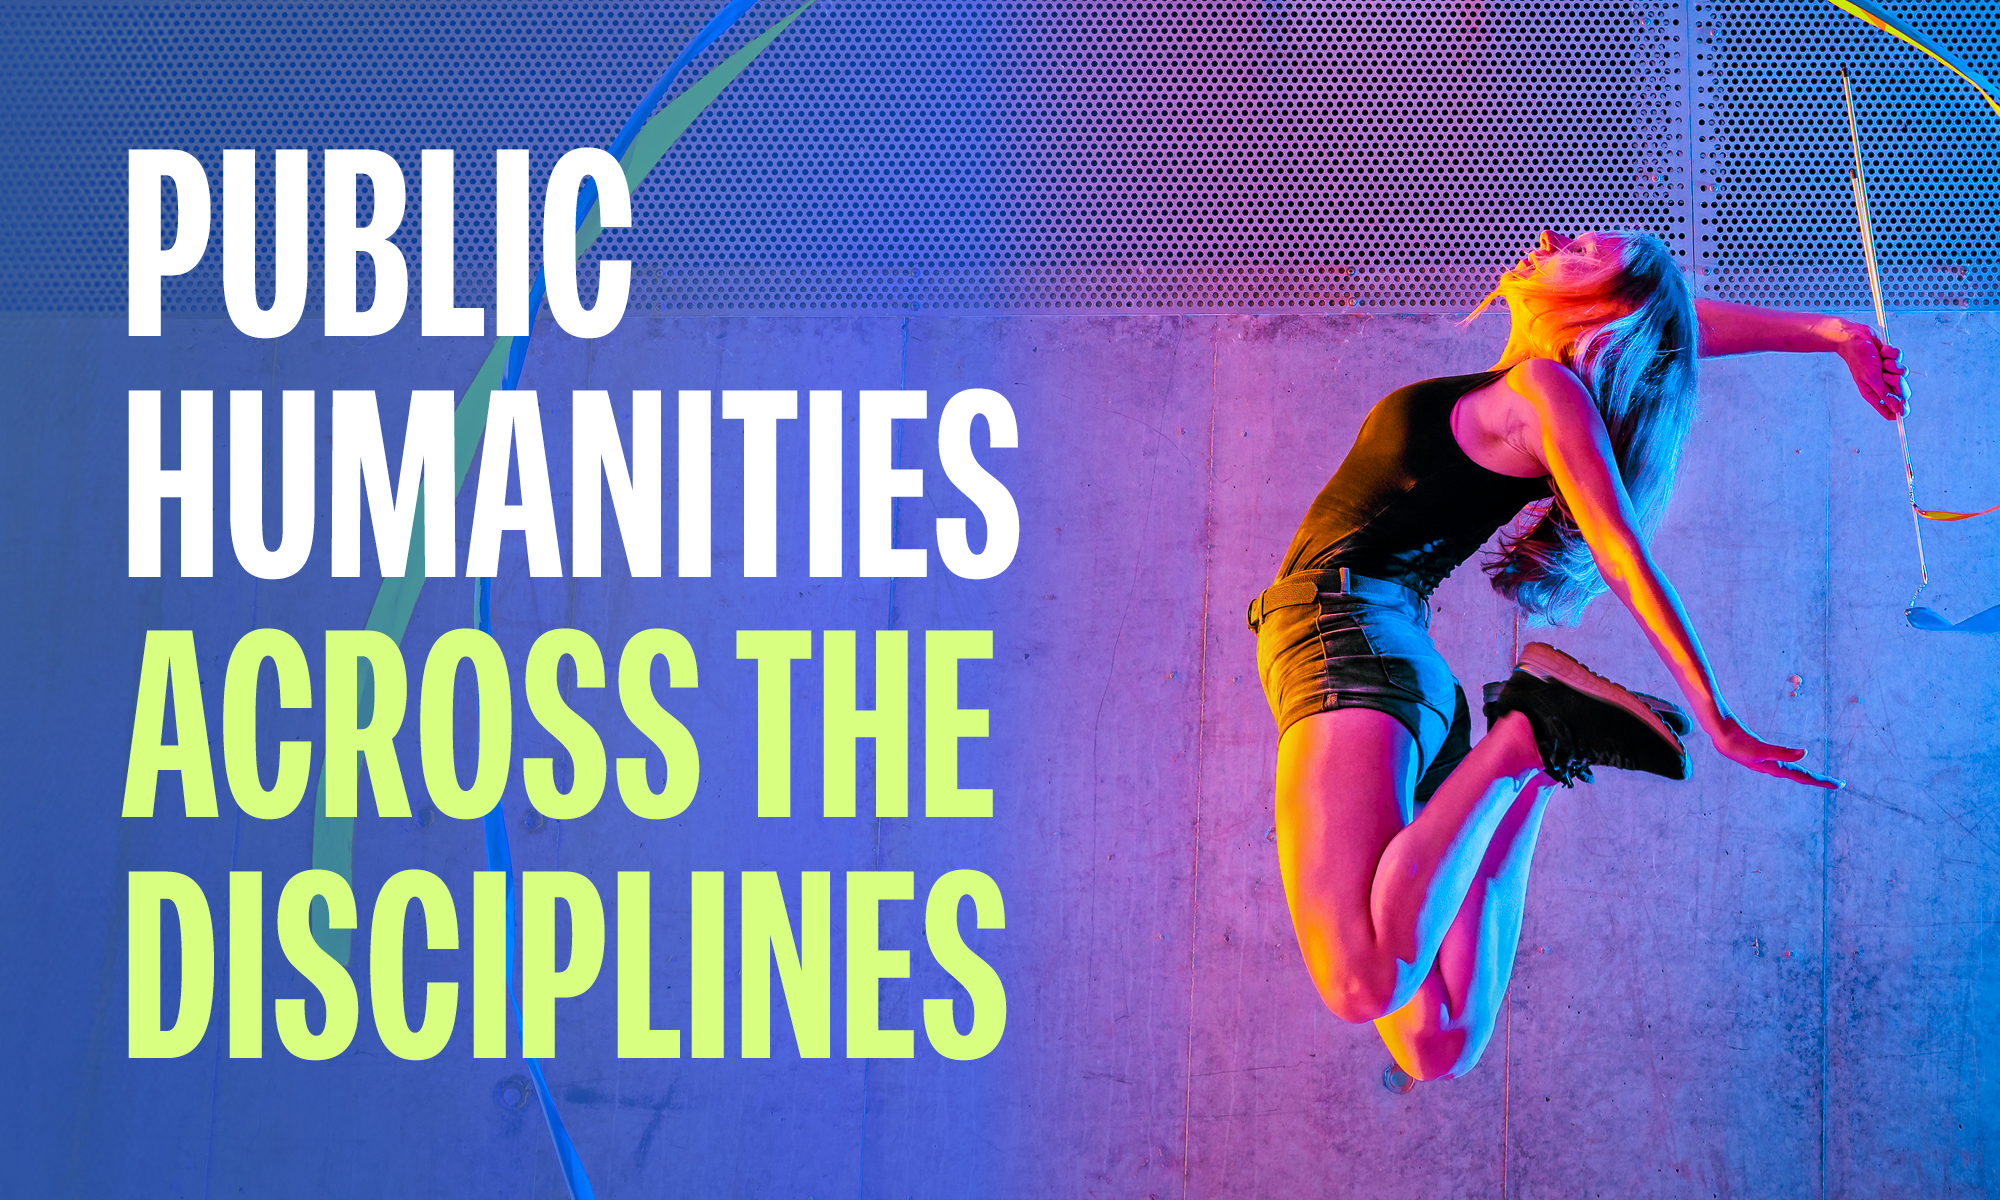 Public Humanities across the disciplines